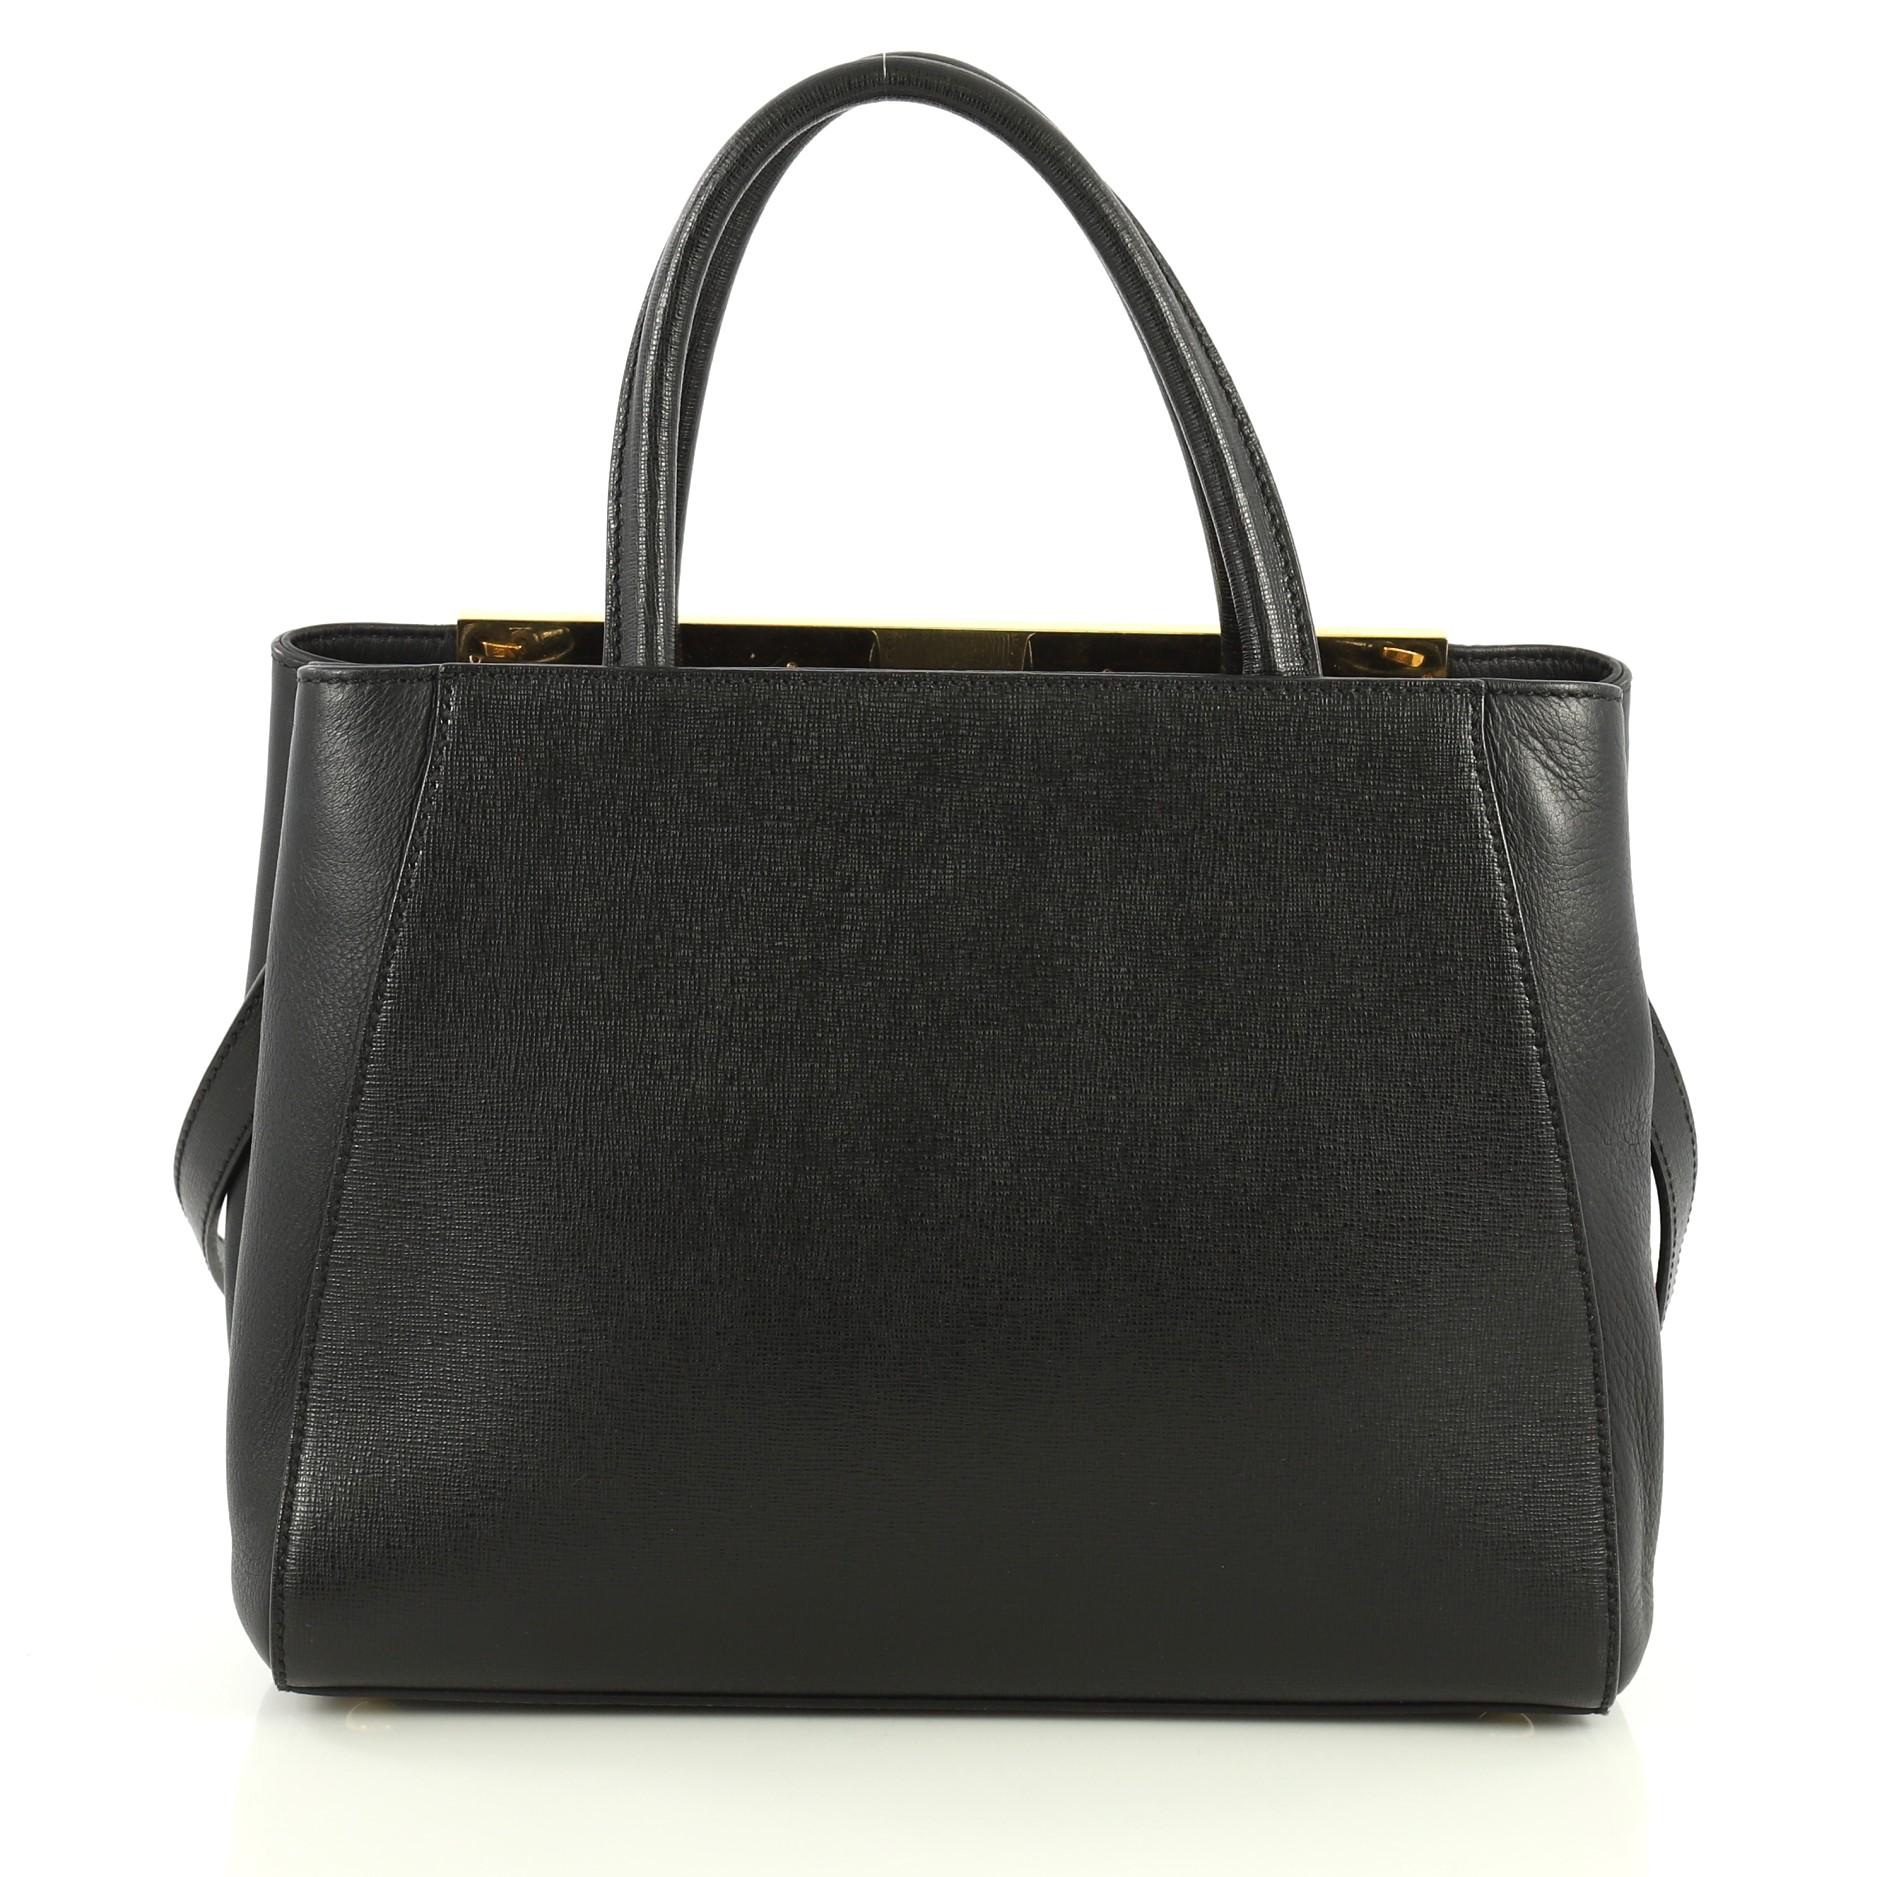 Black Fendi 2Jours Bag Leather Petite